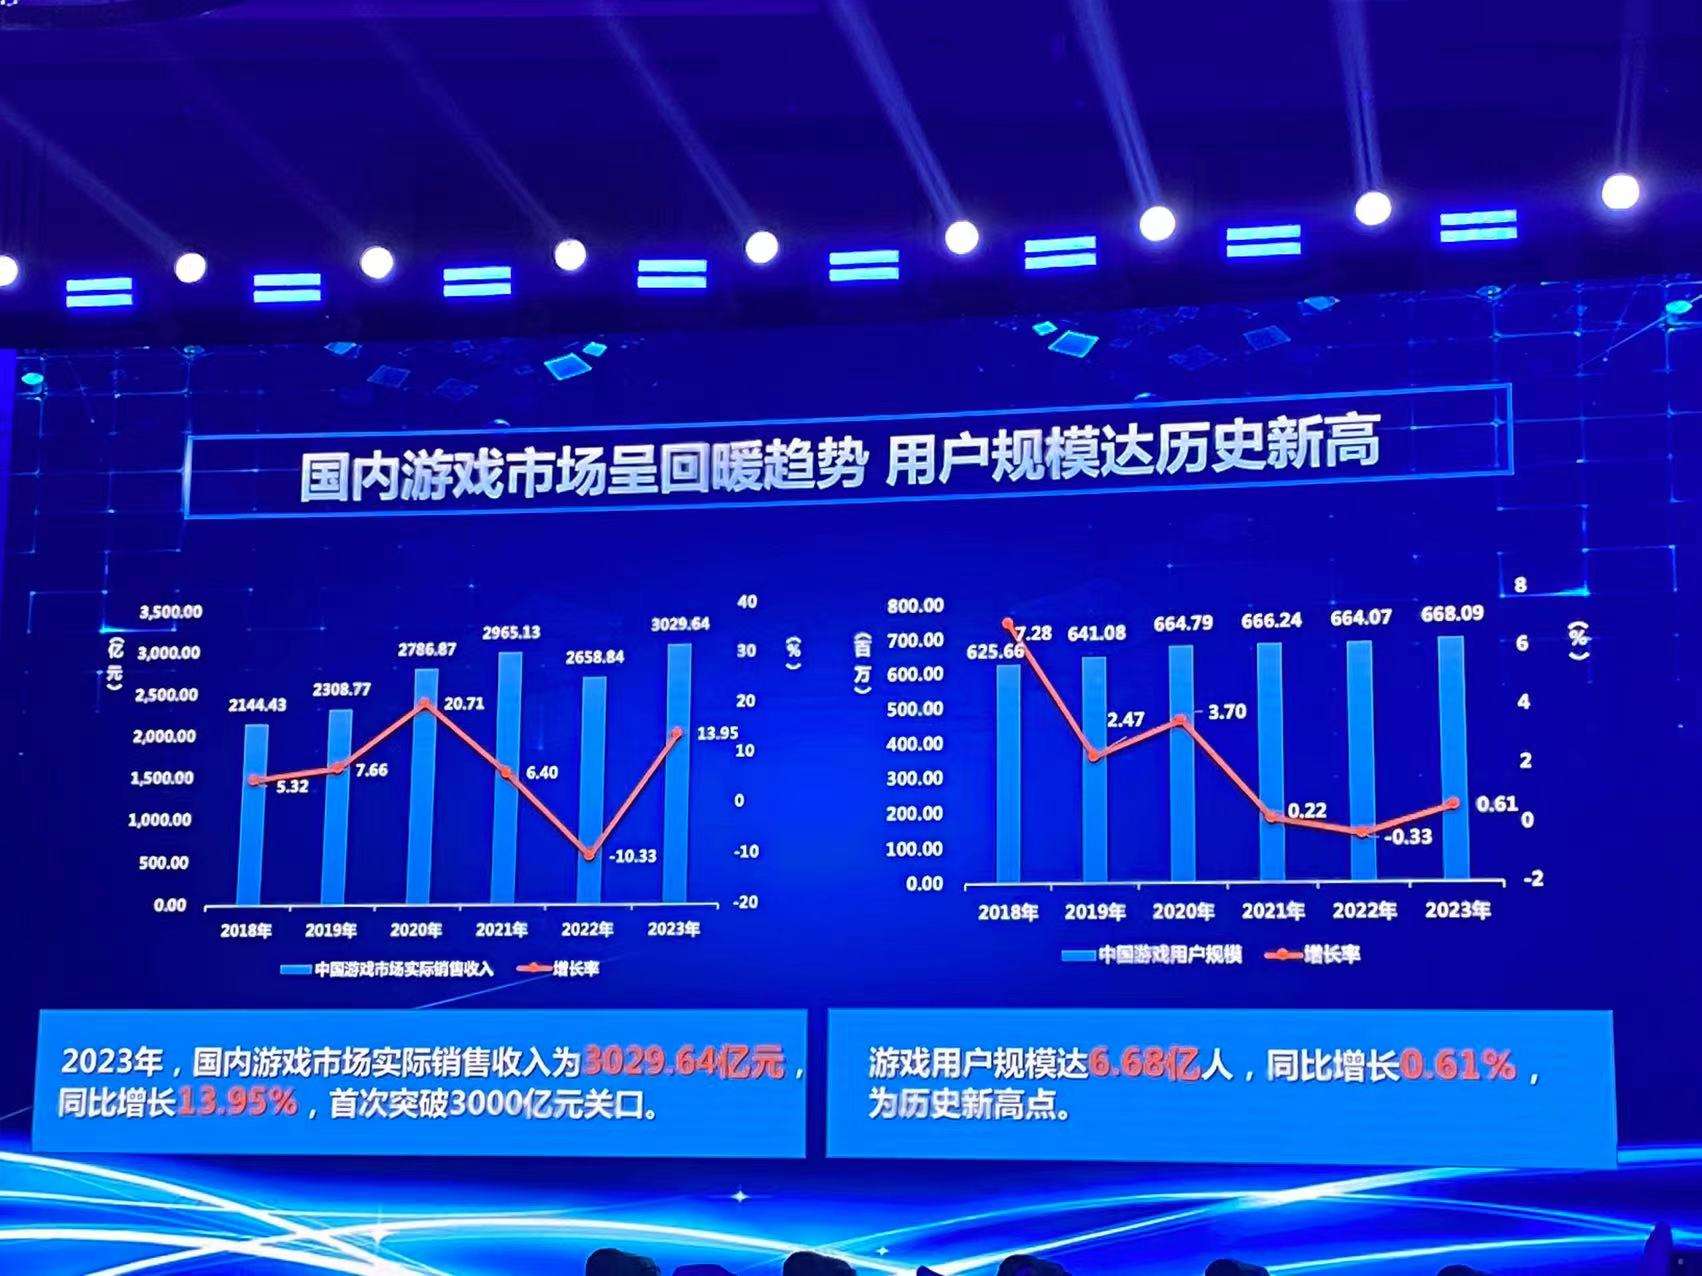 2023 - Trung Quốc cho ra mắt gần 950 game mobile trong năm 2023 Phe-duyet-game-1-1704505991-65